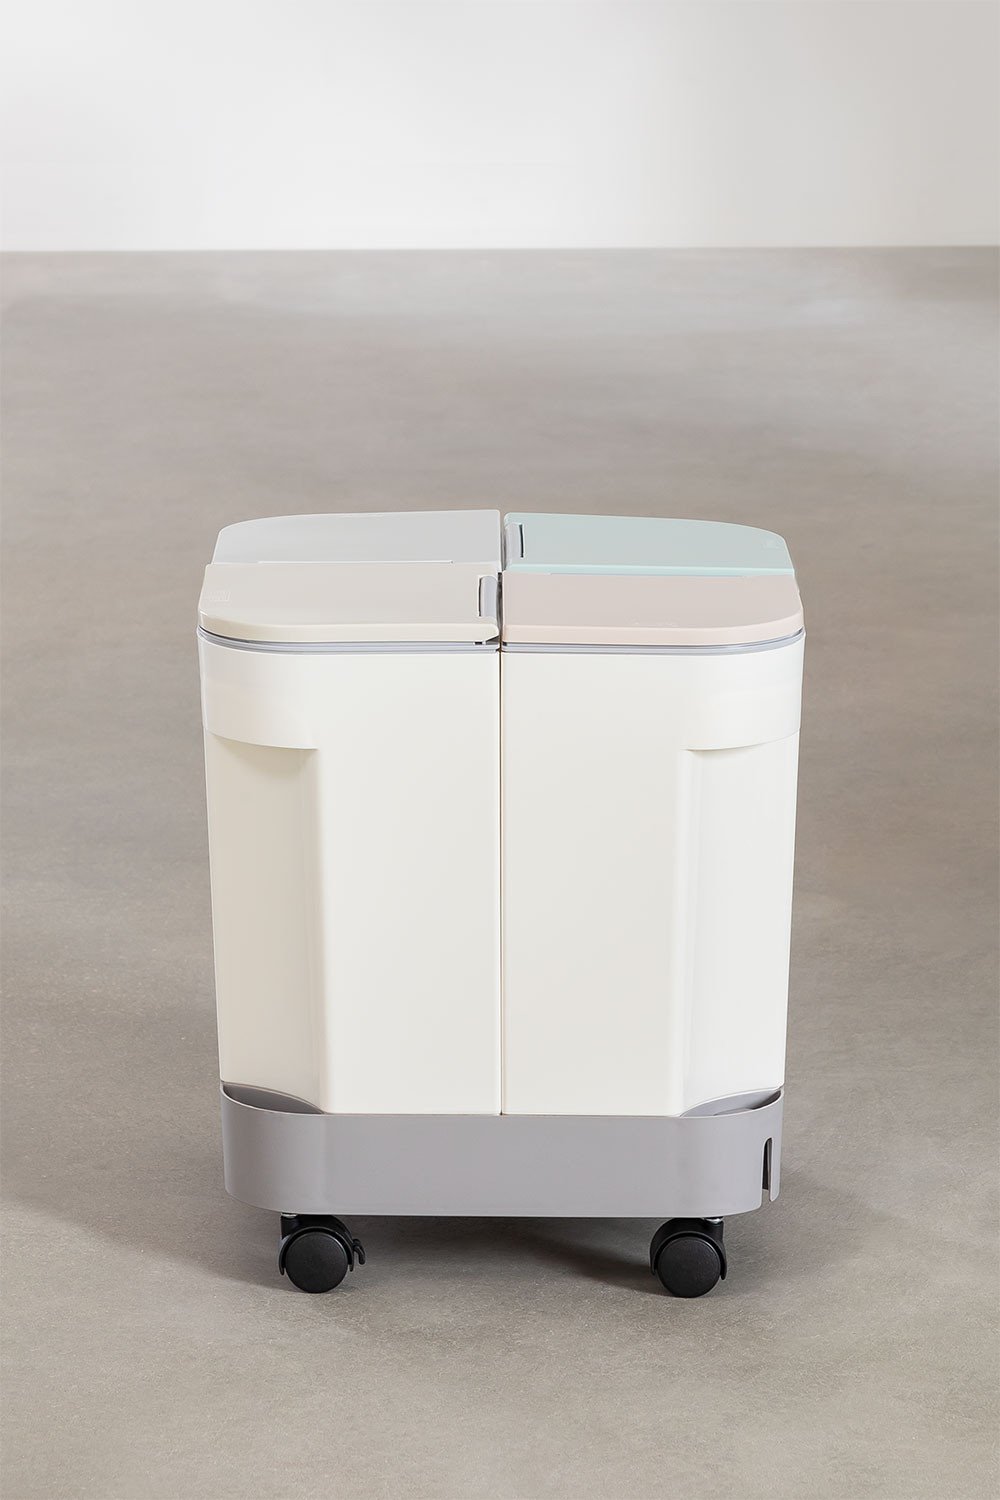 Cubo de basura con compartimentos reciclaje Venca Hogar - Venca - 059246